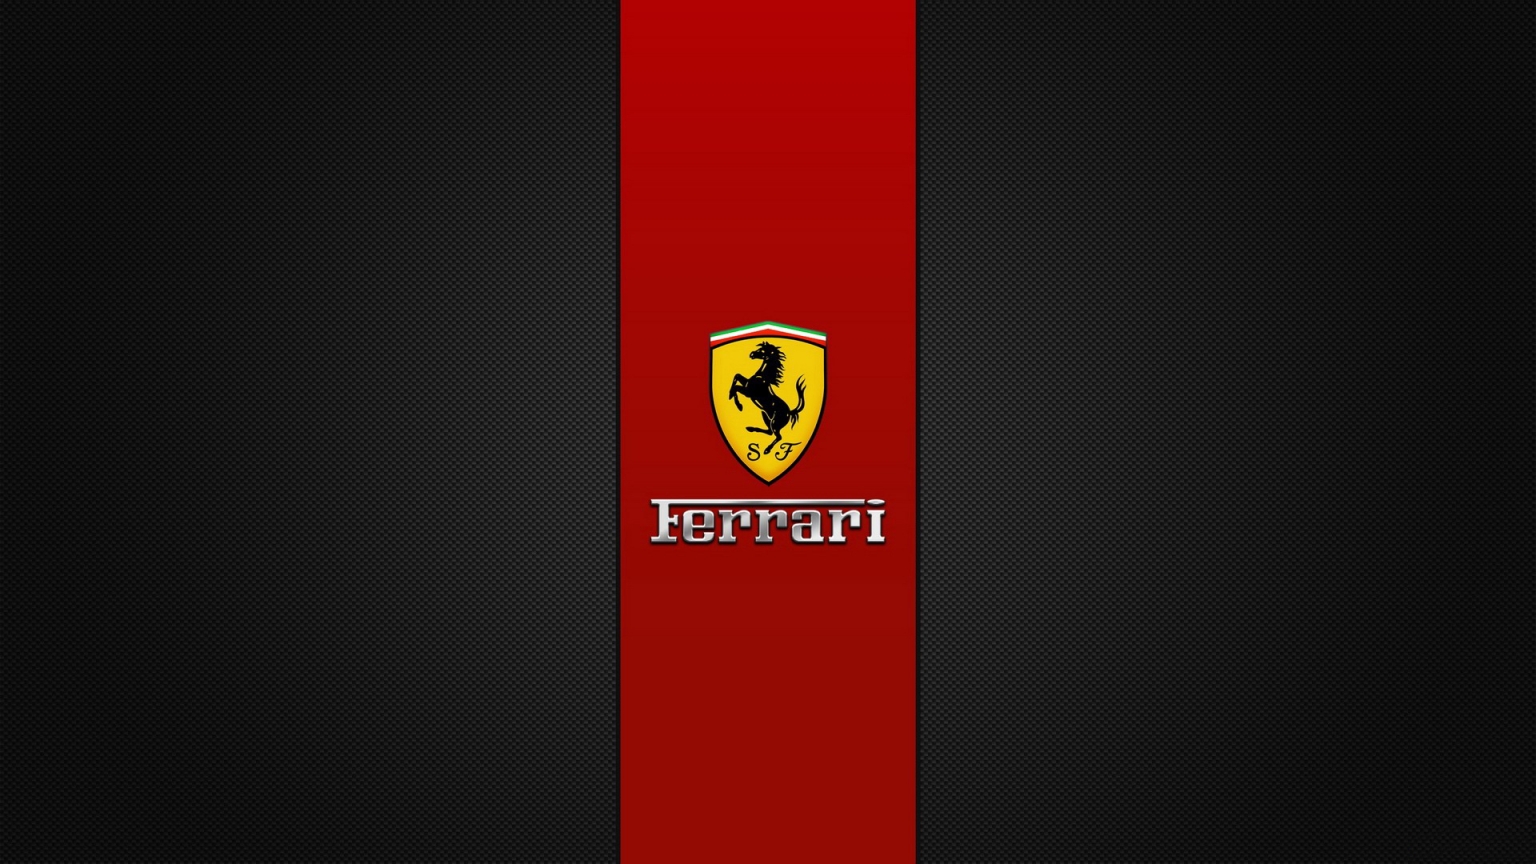 Ferrari Brand Logo for 1536 x 864 HDTV resolution